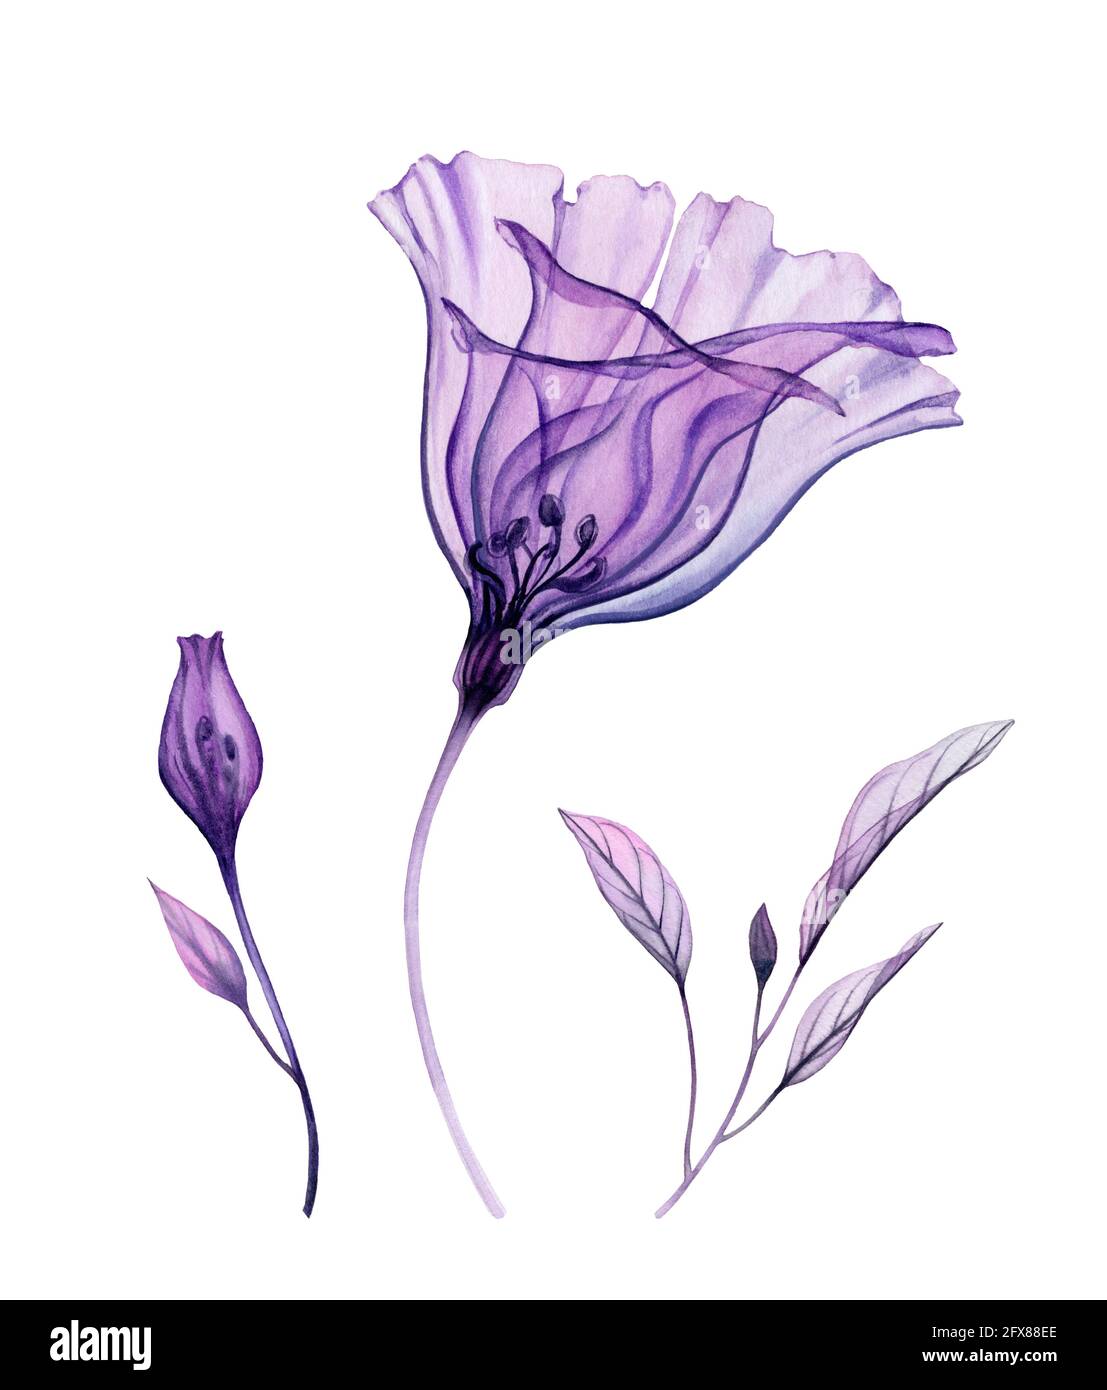 Fiori acquerelli. Collezione di fiori ilusianthil trasparenti, foglie di colore viola. Design isolato dipinto a mano. Illustrazione botanica per Foto Stock